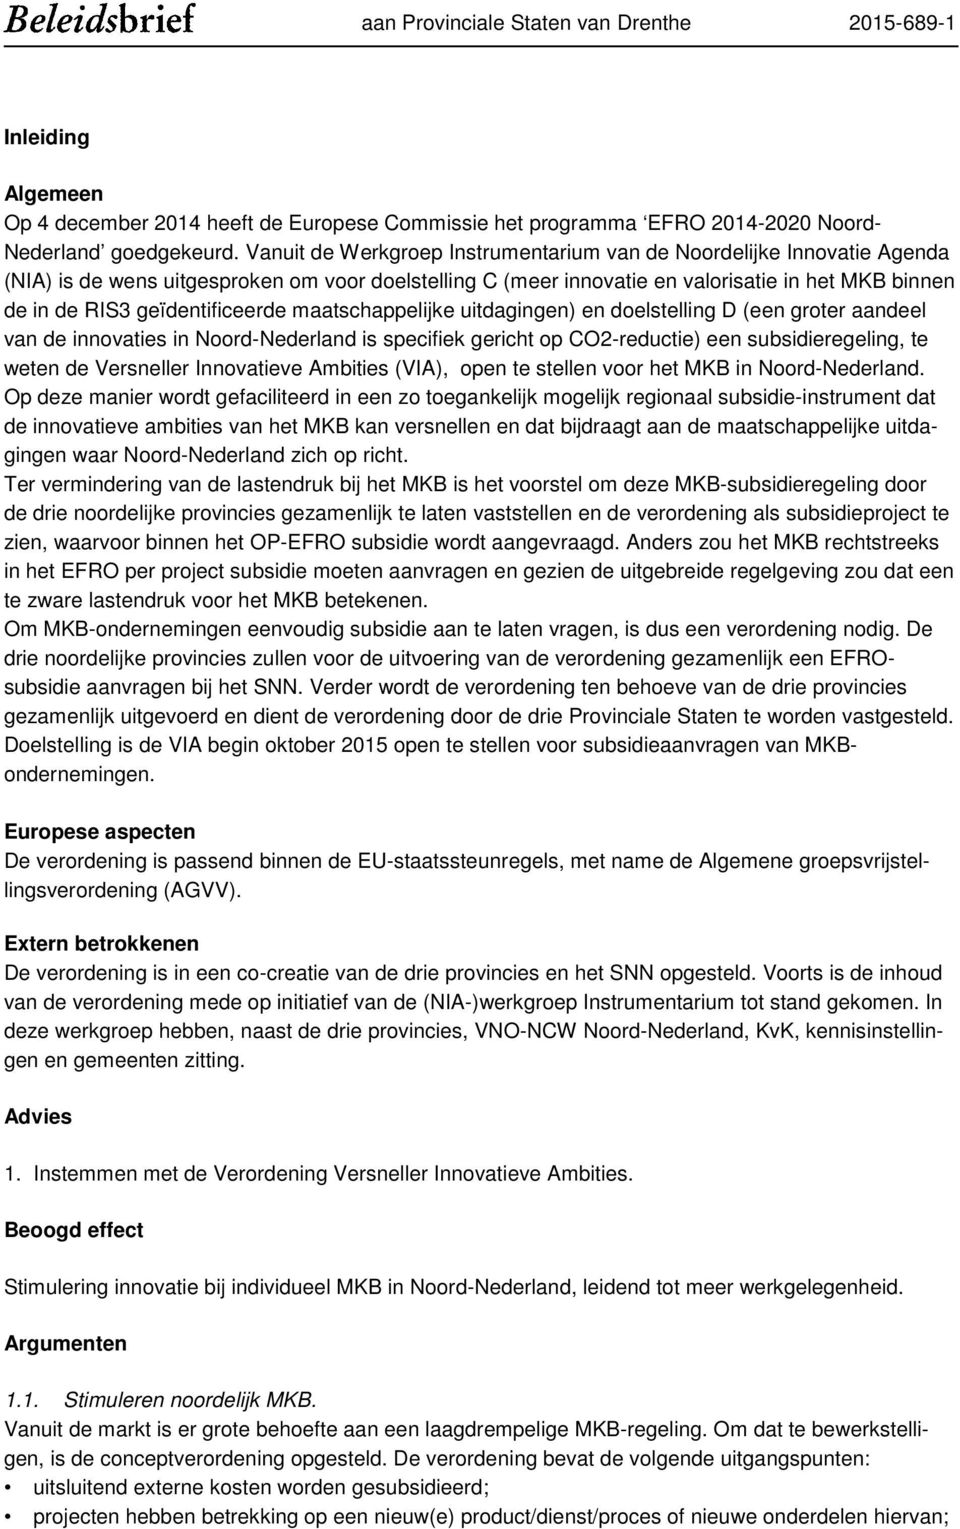 geïdentificeerde maatschappelijke uitdagingen) en doelstelling D (een groter aandeel van de innovaties in Noord-Nederland is specifiek gericht op CO2-reductie) een subsidieregeling, te weten de